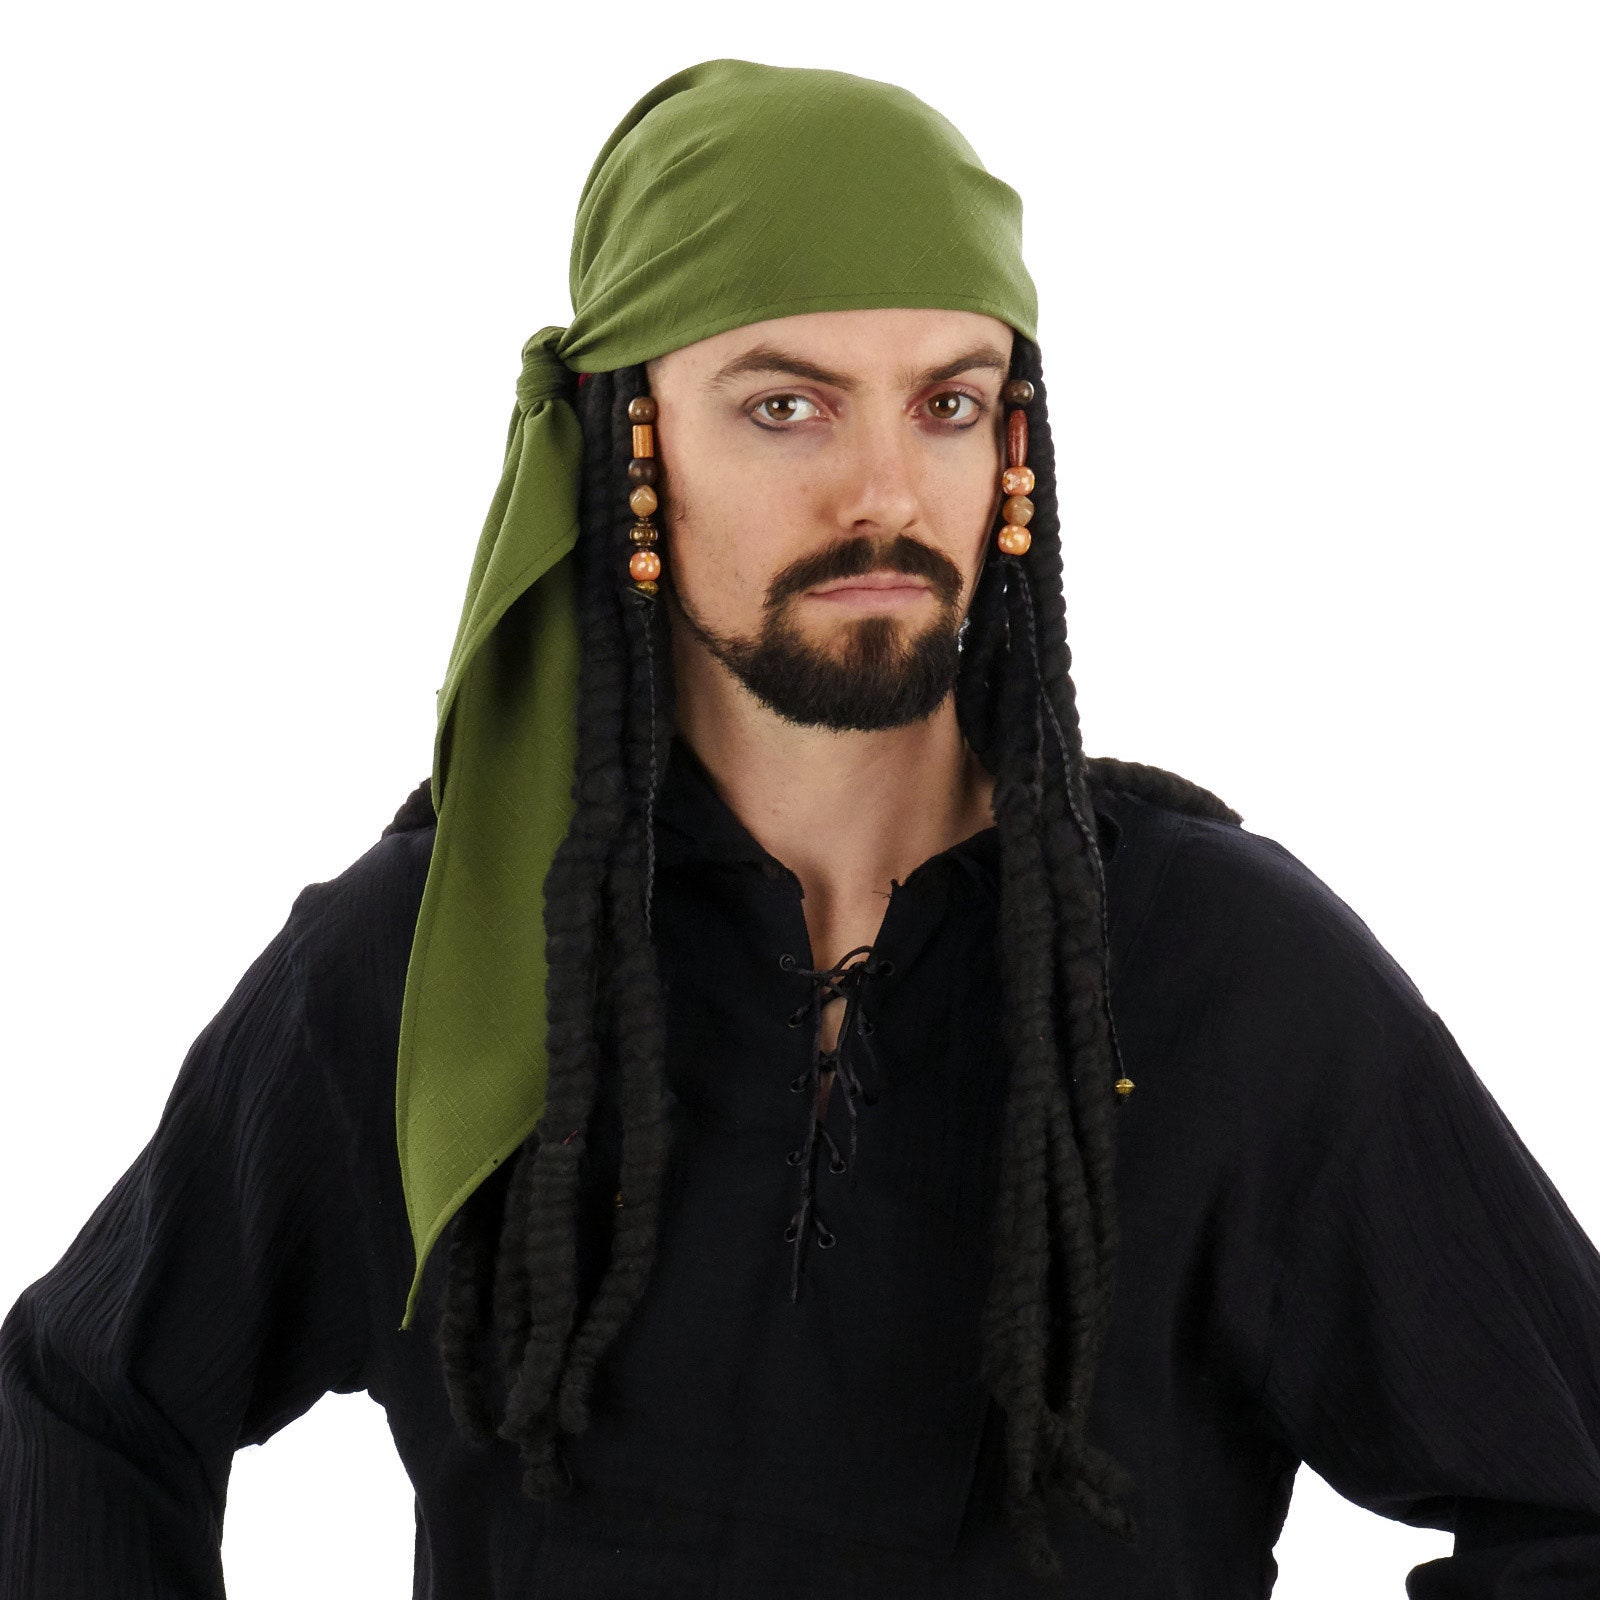 Disfraz de pirata Pañuelo en la cabeza Bandana -  España